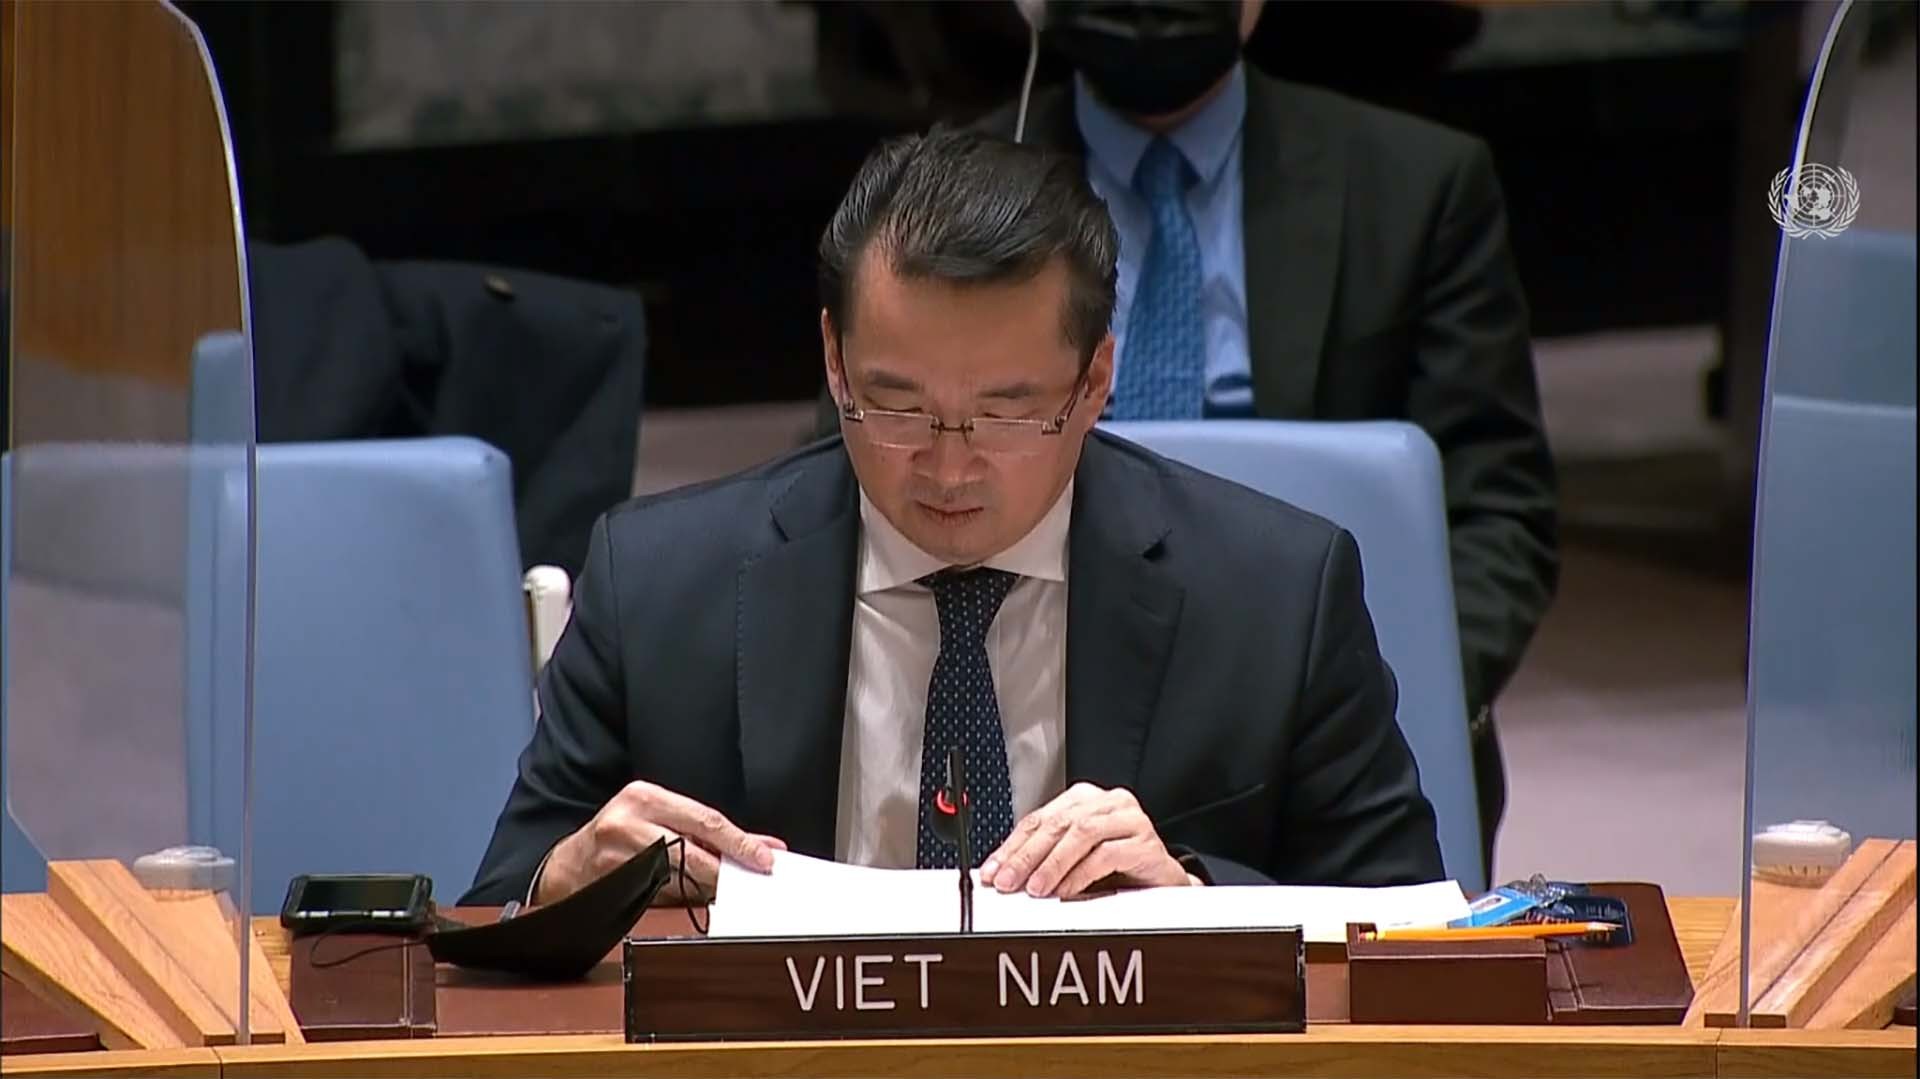 Đại sứ Phạm Hải Anh, Đại biện lâm thời của Việt Nam tại LHQ phát biểu tại cuộc họp.